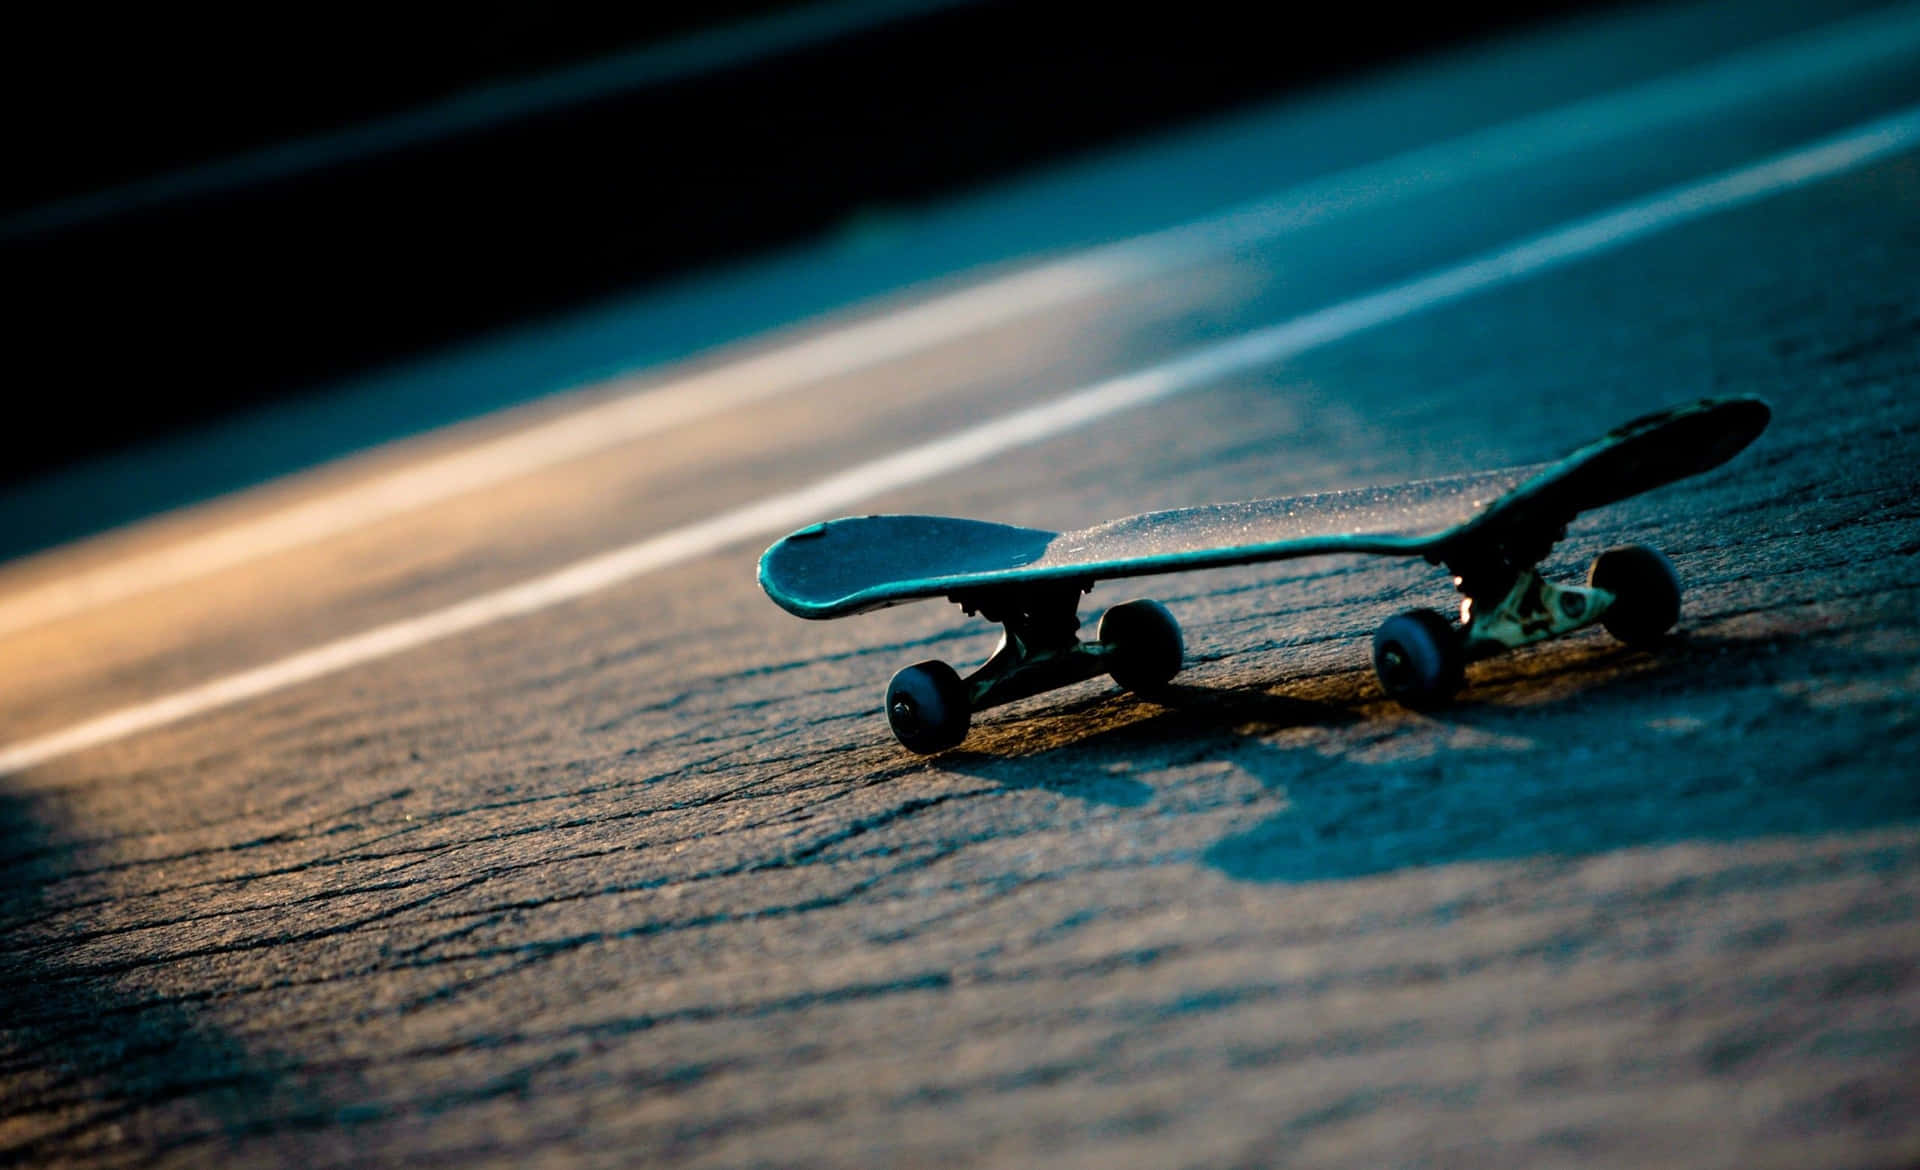 Lonely Skateboardat Dusk.jpg Wallpaper